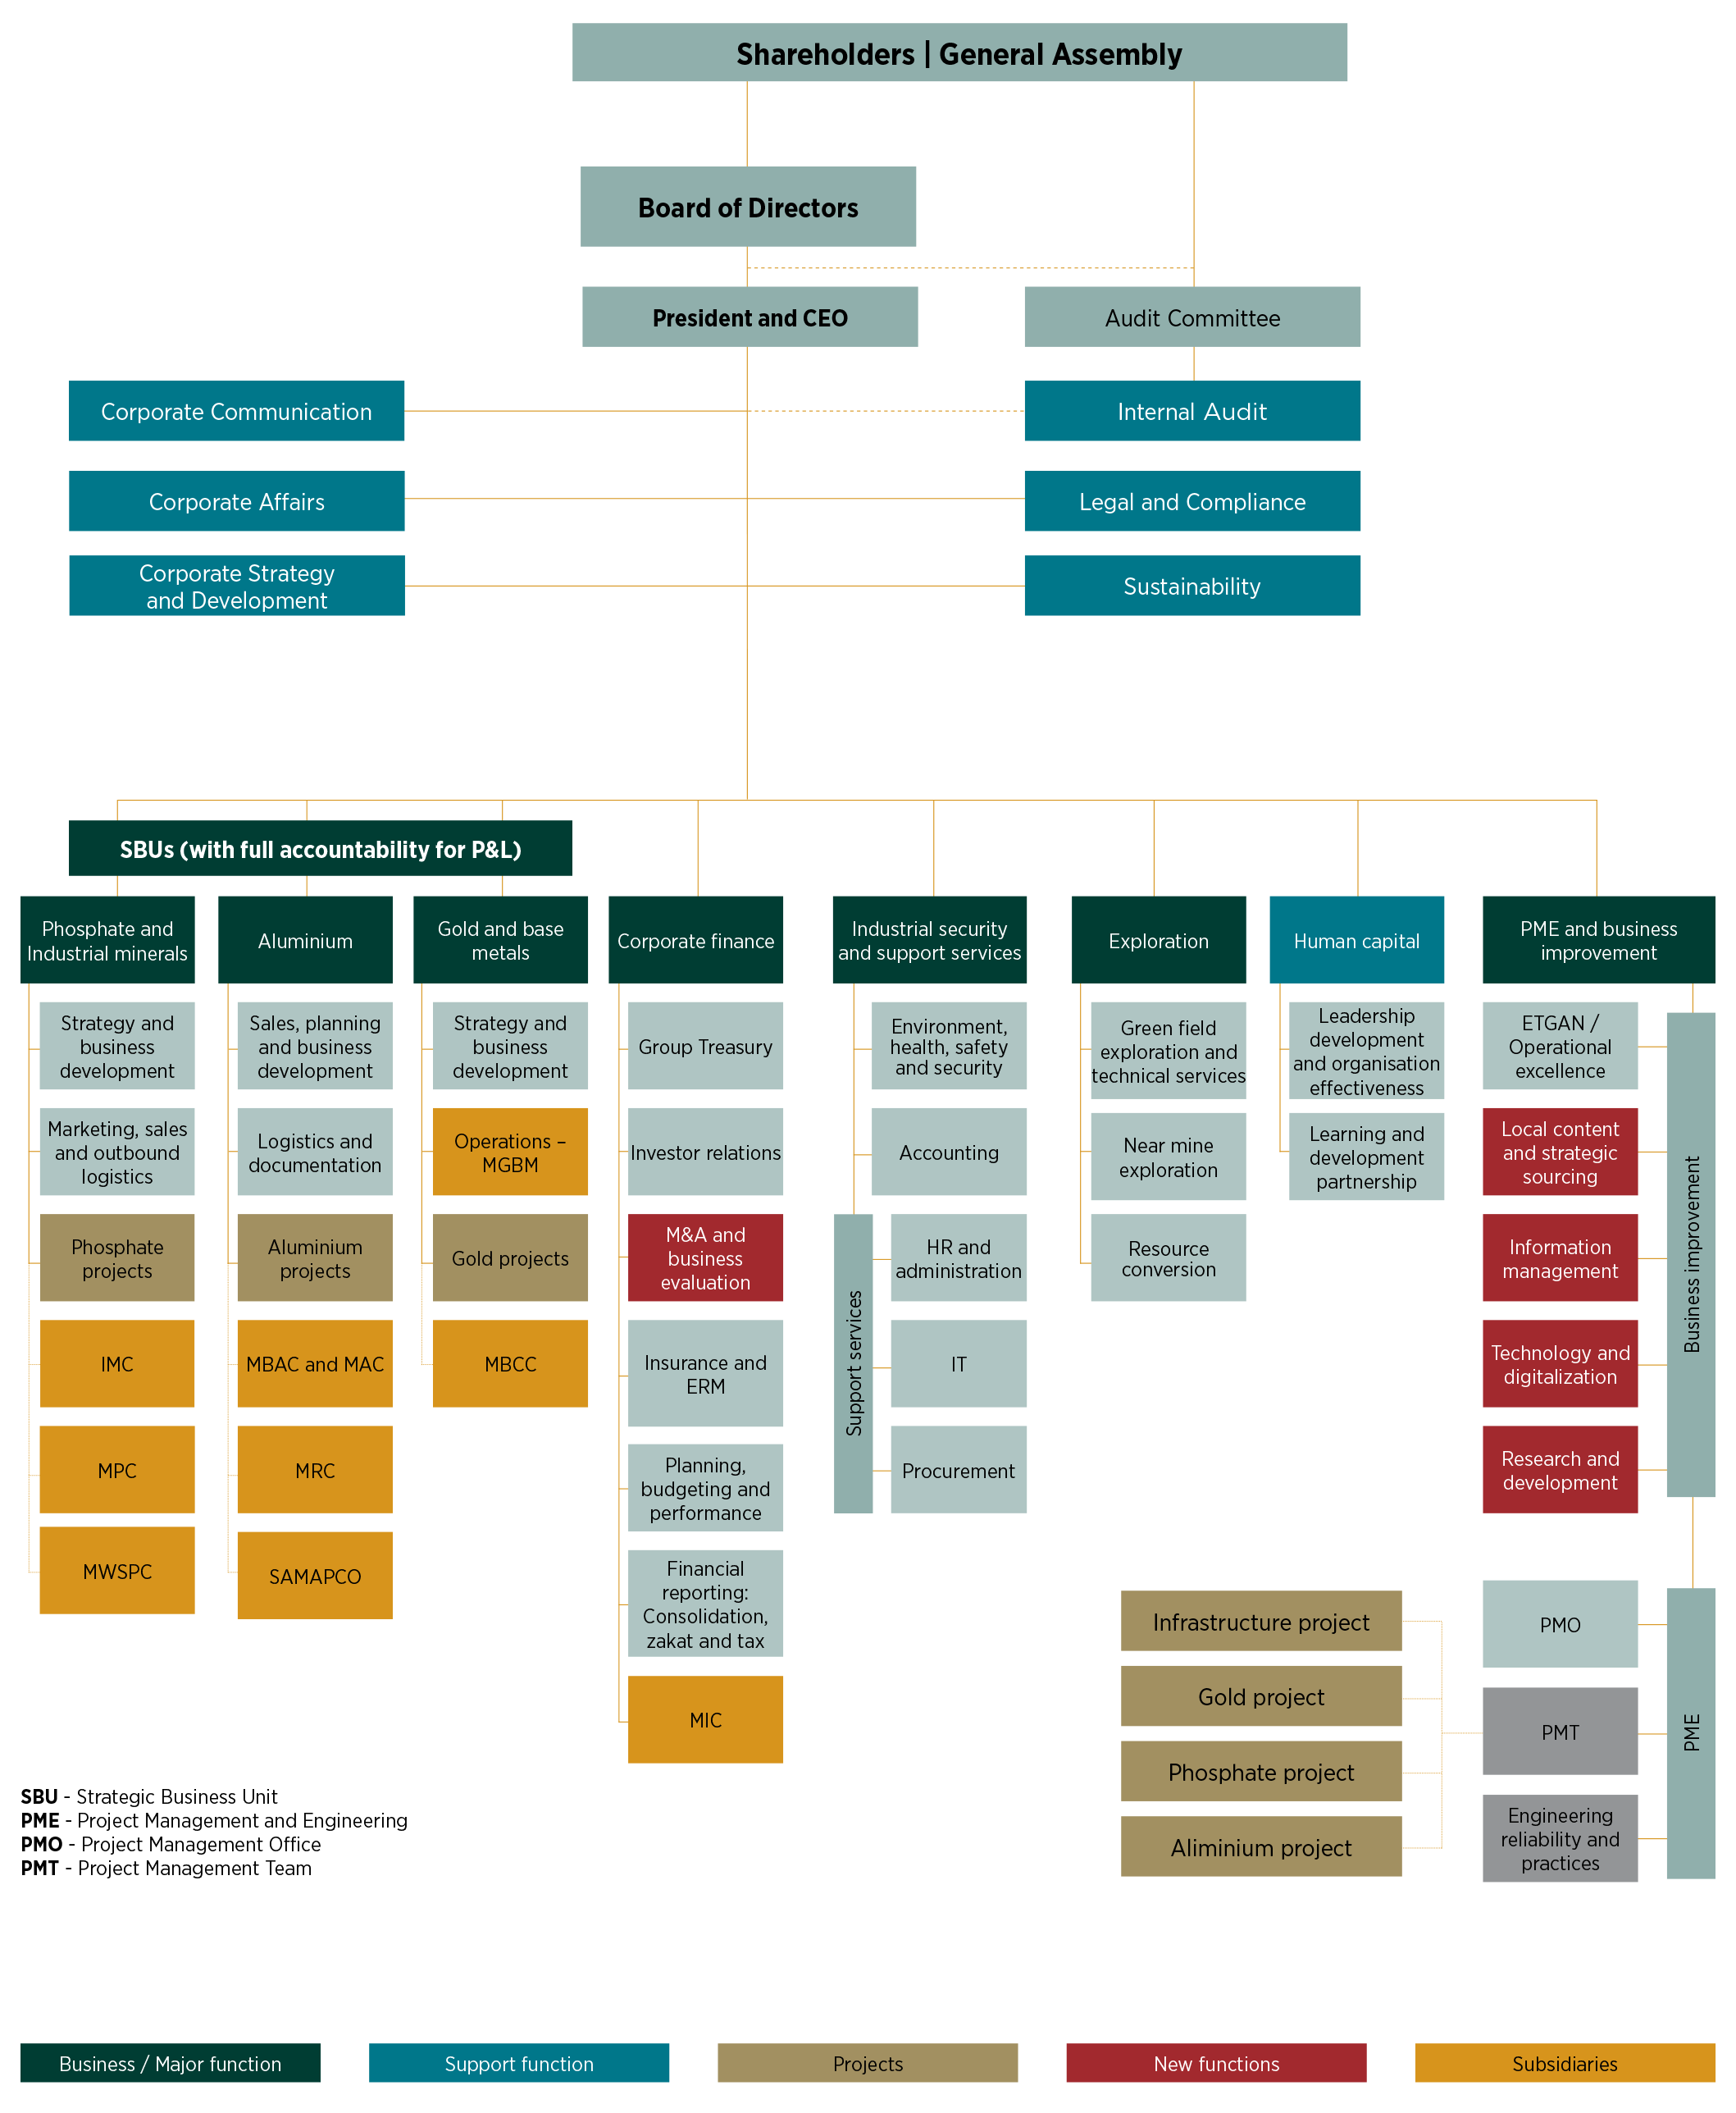 Organizational Chart Of A Company